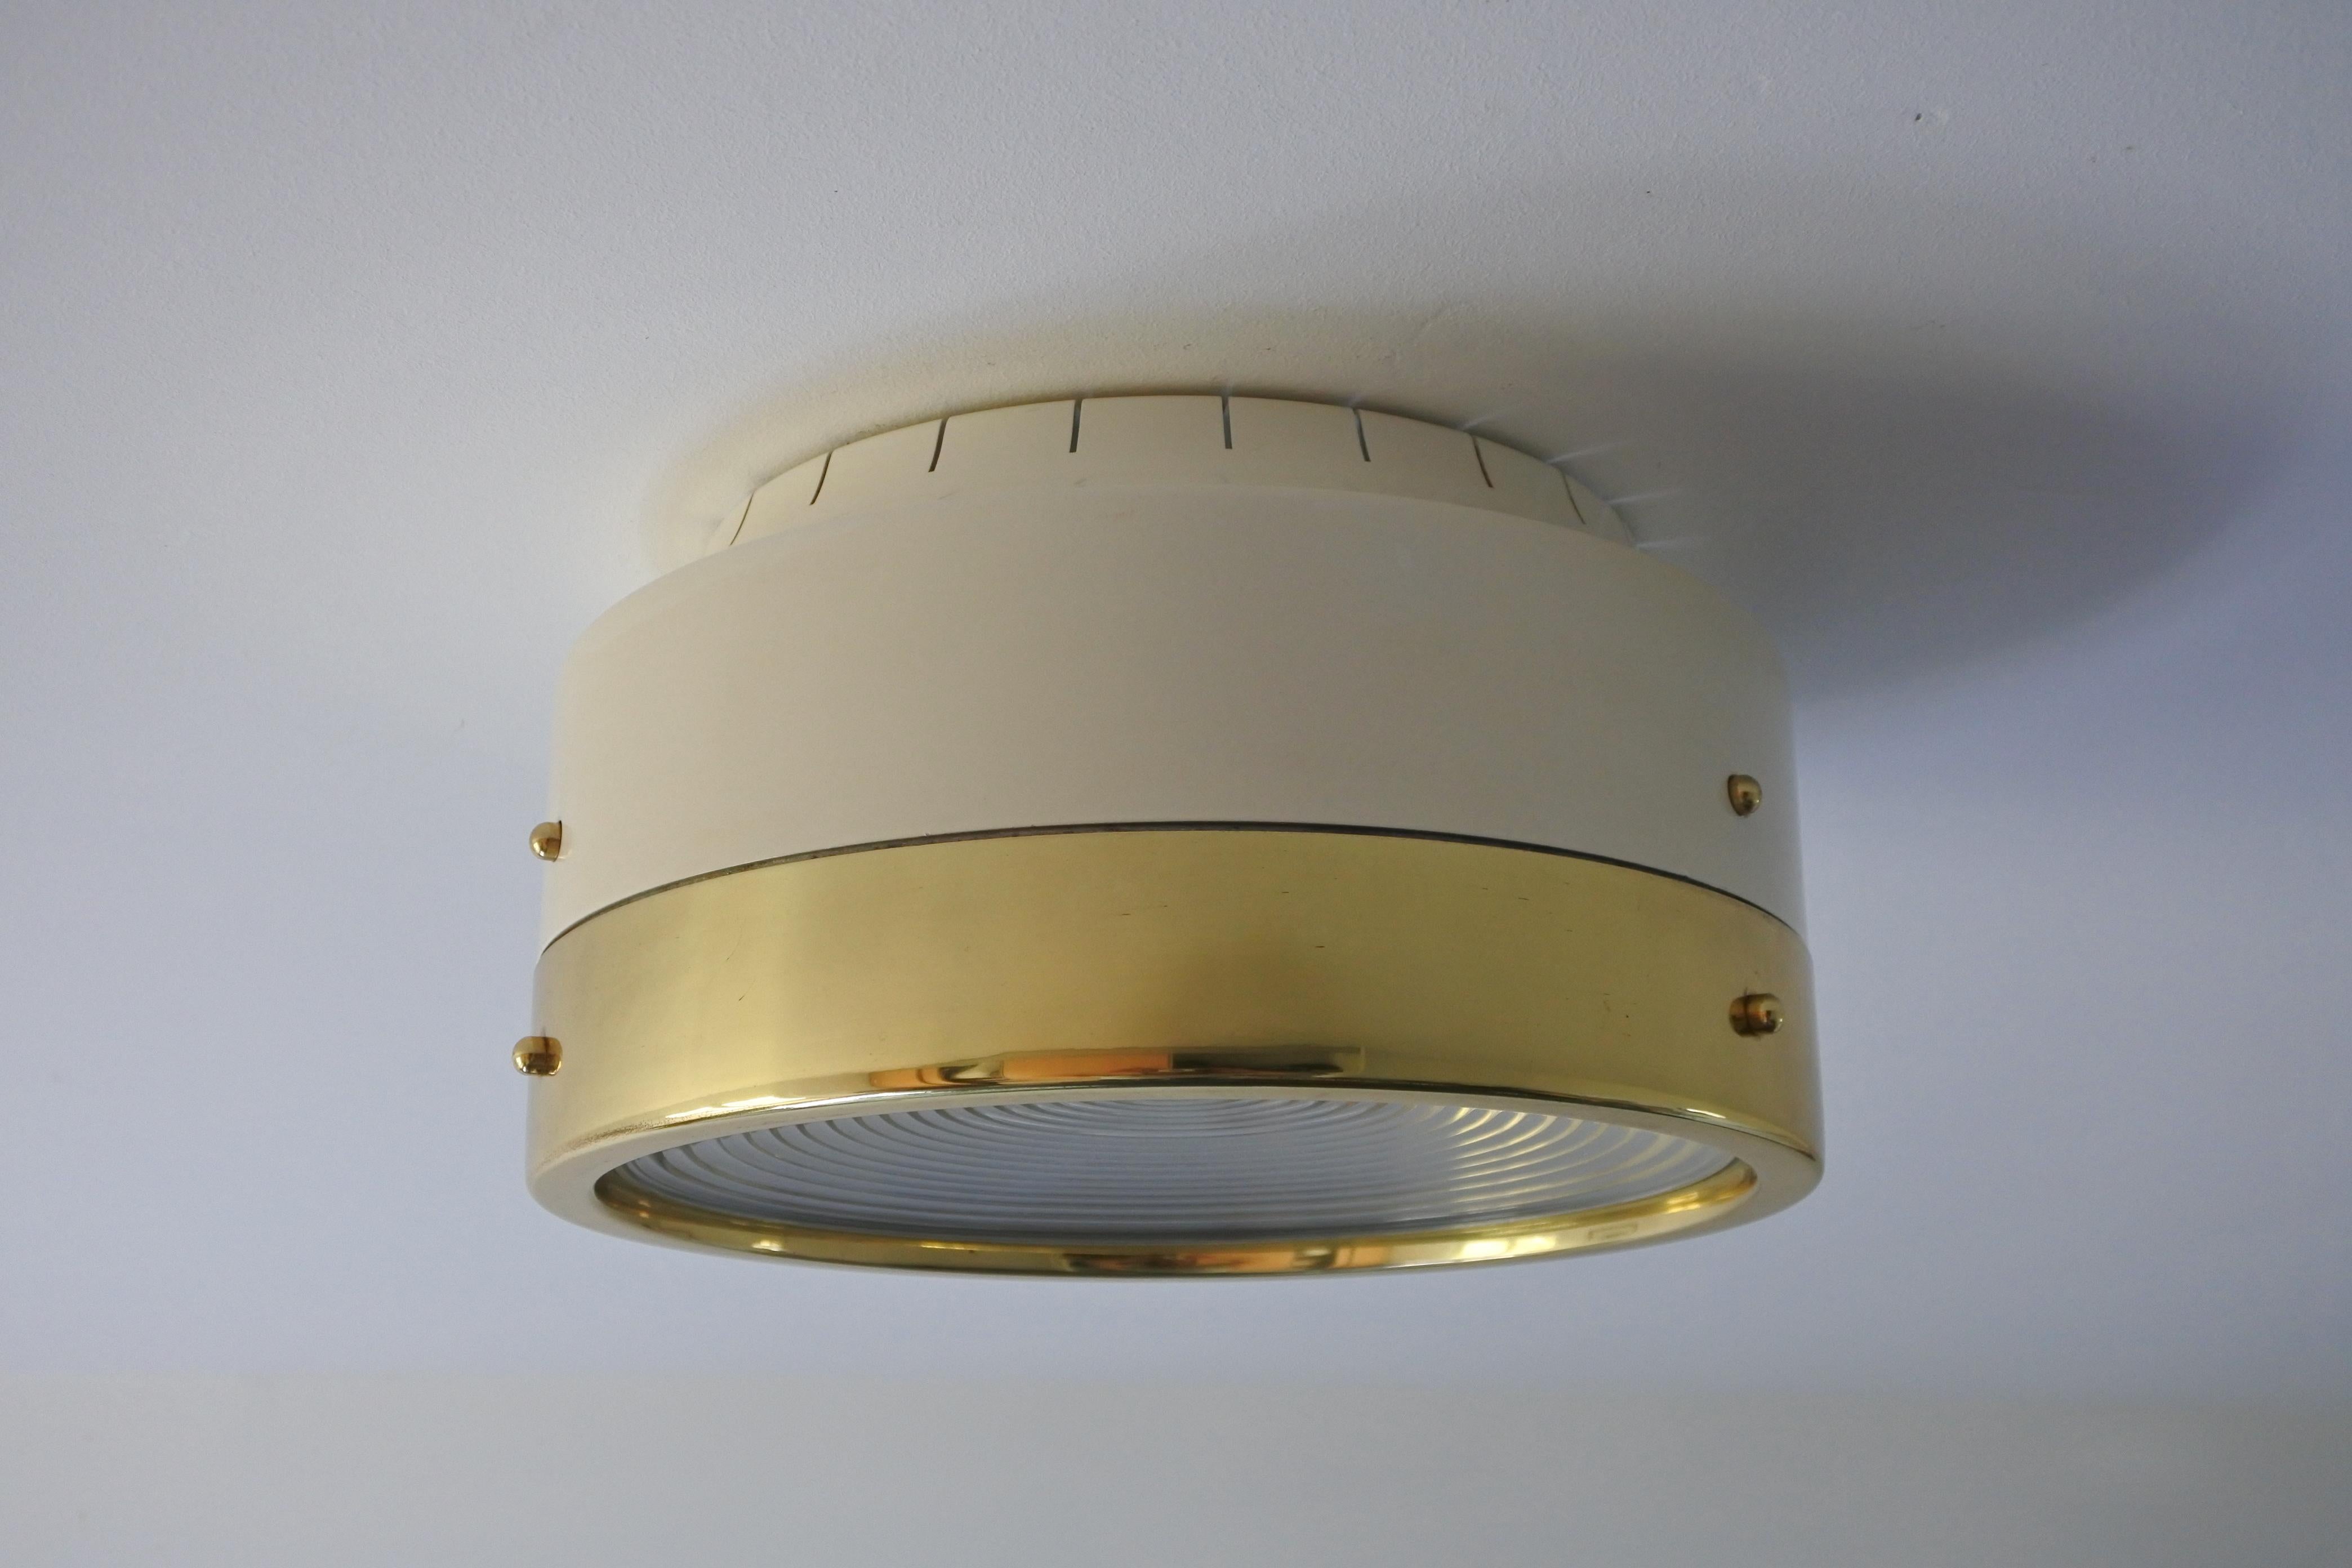 Rare lampe à encastrer réalisée par le célèbre architecte et designer Tito Agnoli.
Modèle 4448 B, créé en Italie en 1959 et fabriqué par O-Luce. 

Aluminium laqué, laiton et lentille en verre optique de Fresnel.
1x E27 douille Edison.

La lampe est